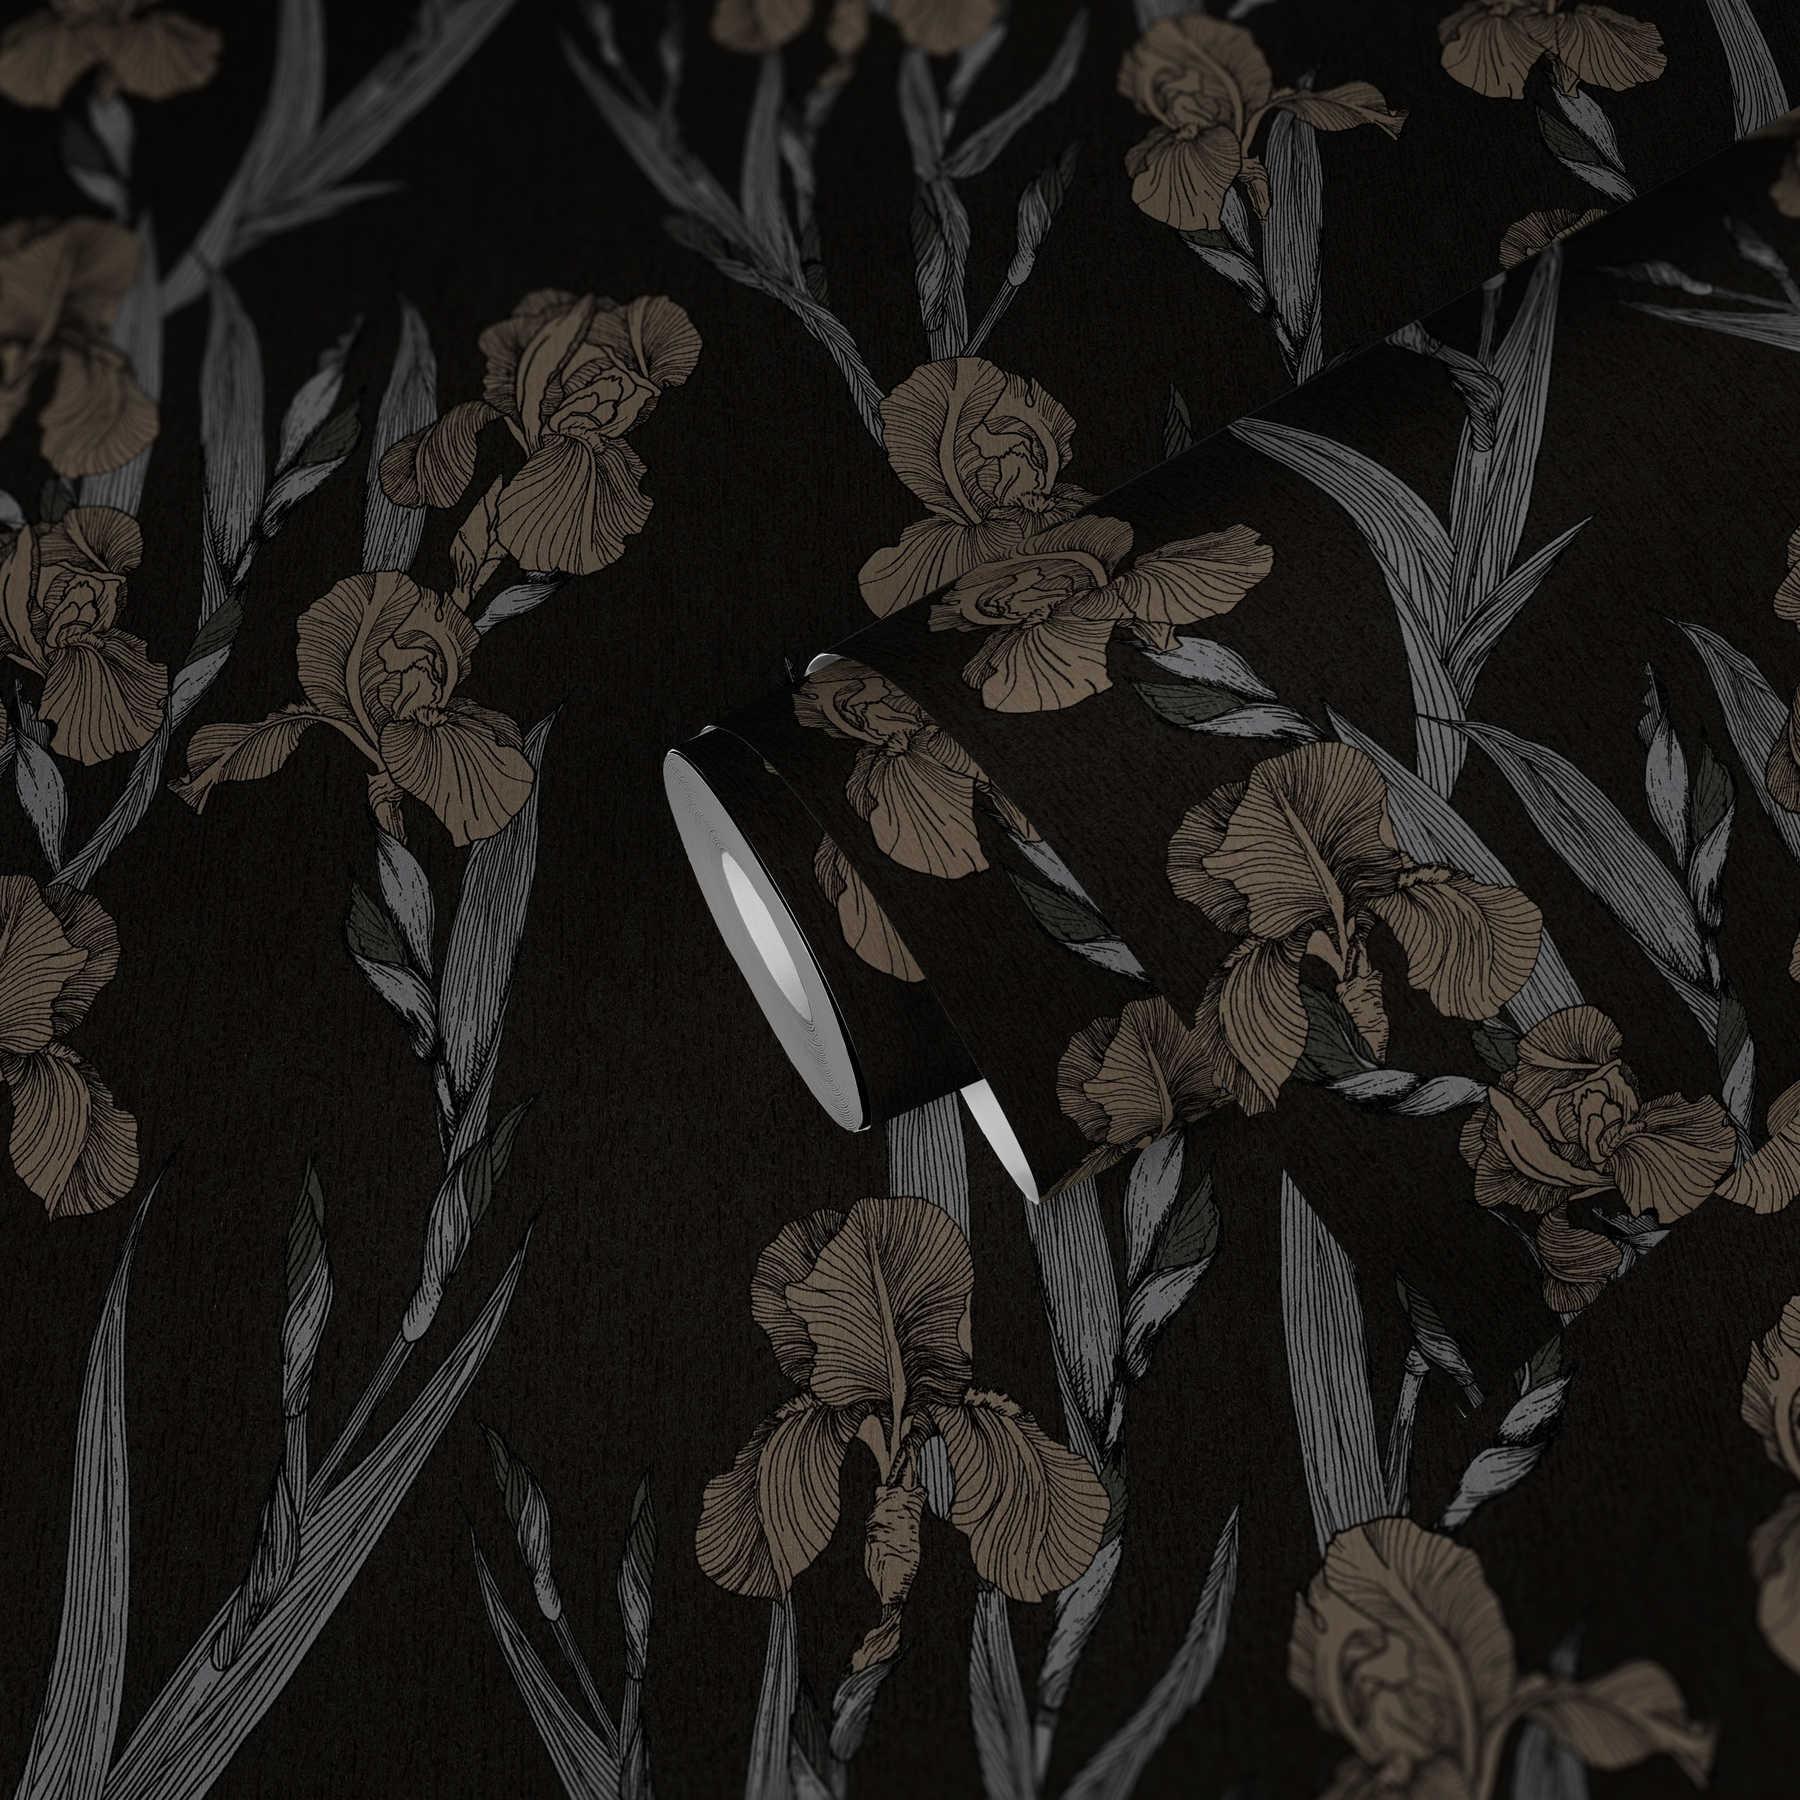             Papier peint à motifs floraux avec des fleurs de style dessin - noir, gris, marron
        